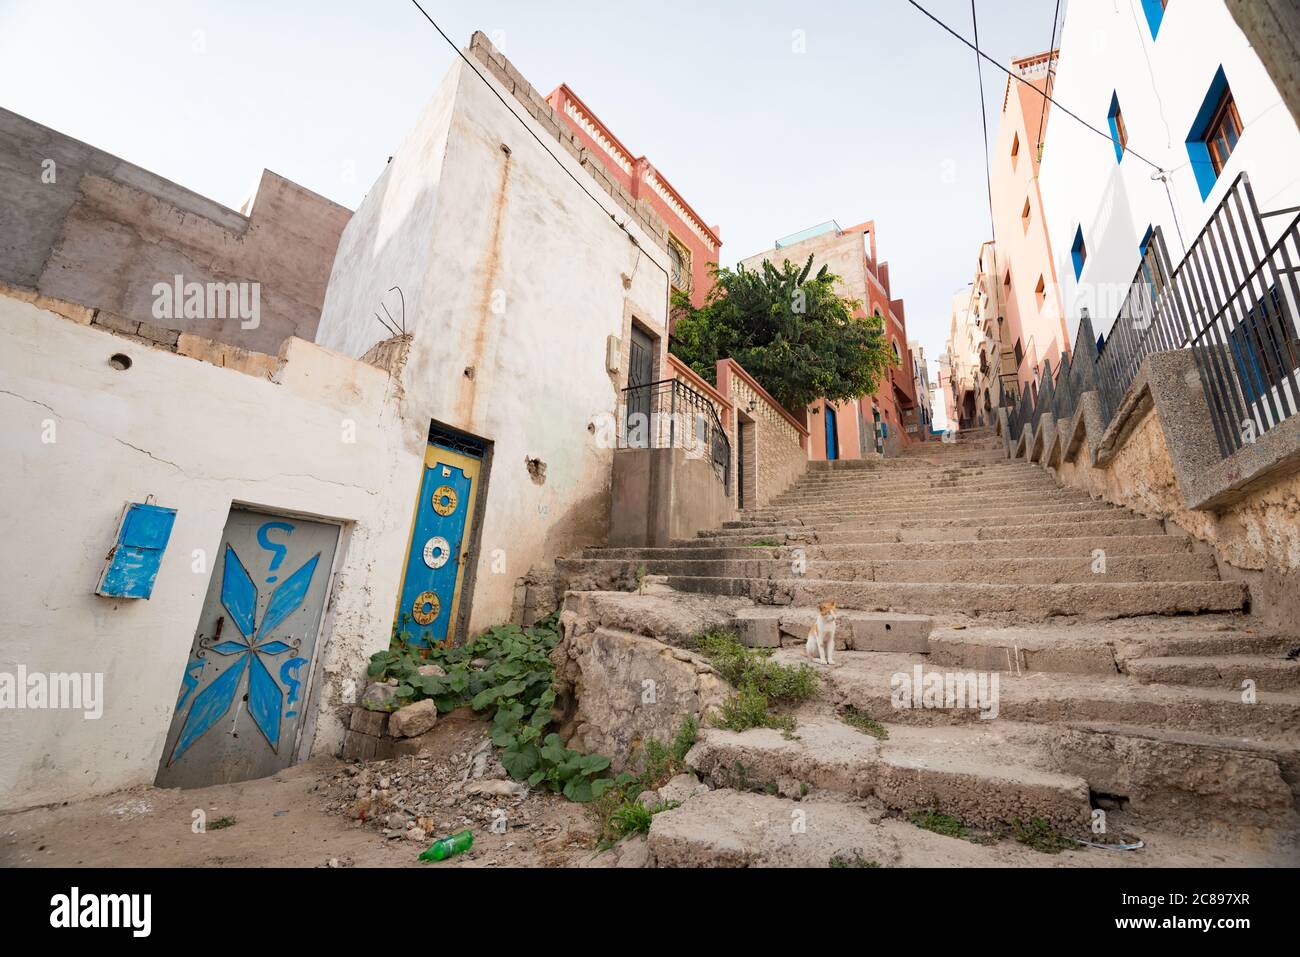 Les ruelles de Taghazout dans la région du Souss au Maroc Banque D'Images